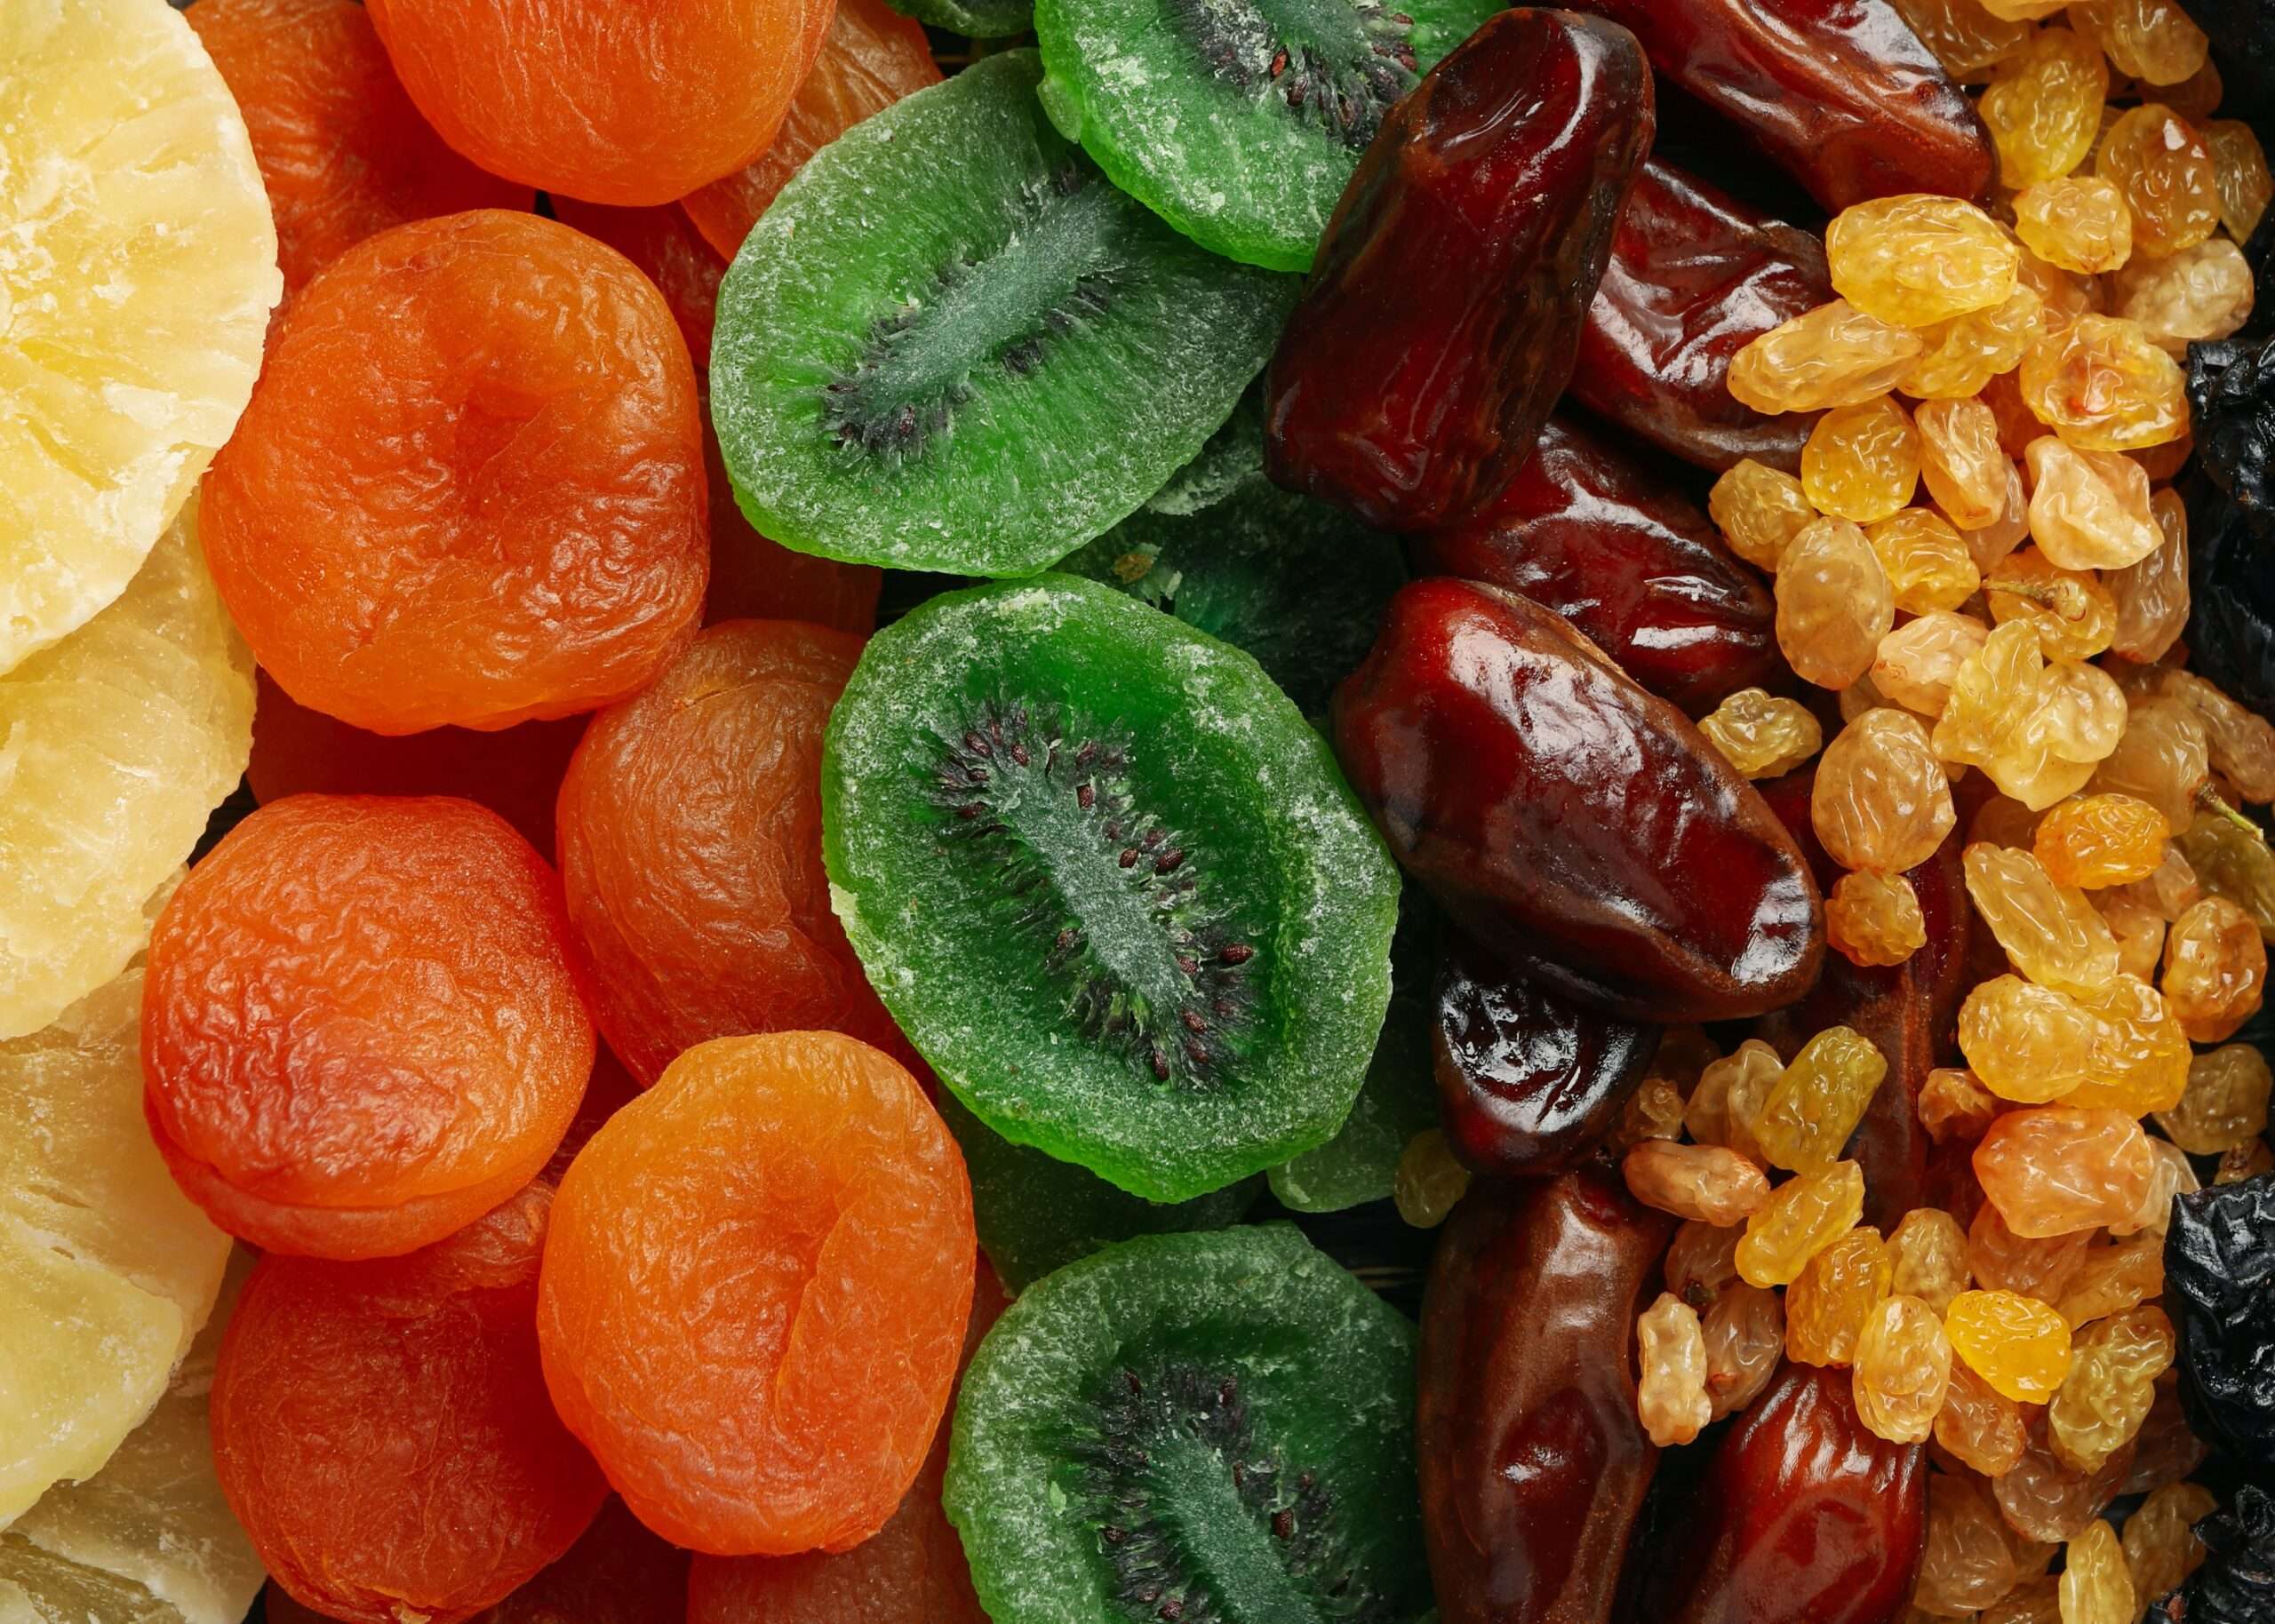 Découvrez une variété de fruits frais, colorés et savoureux, qui raviront vos papilles pendant le carême grec